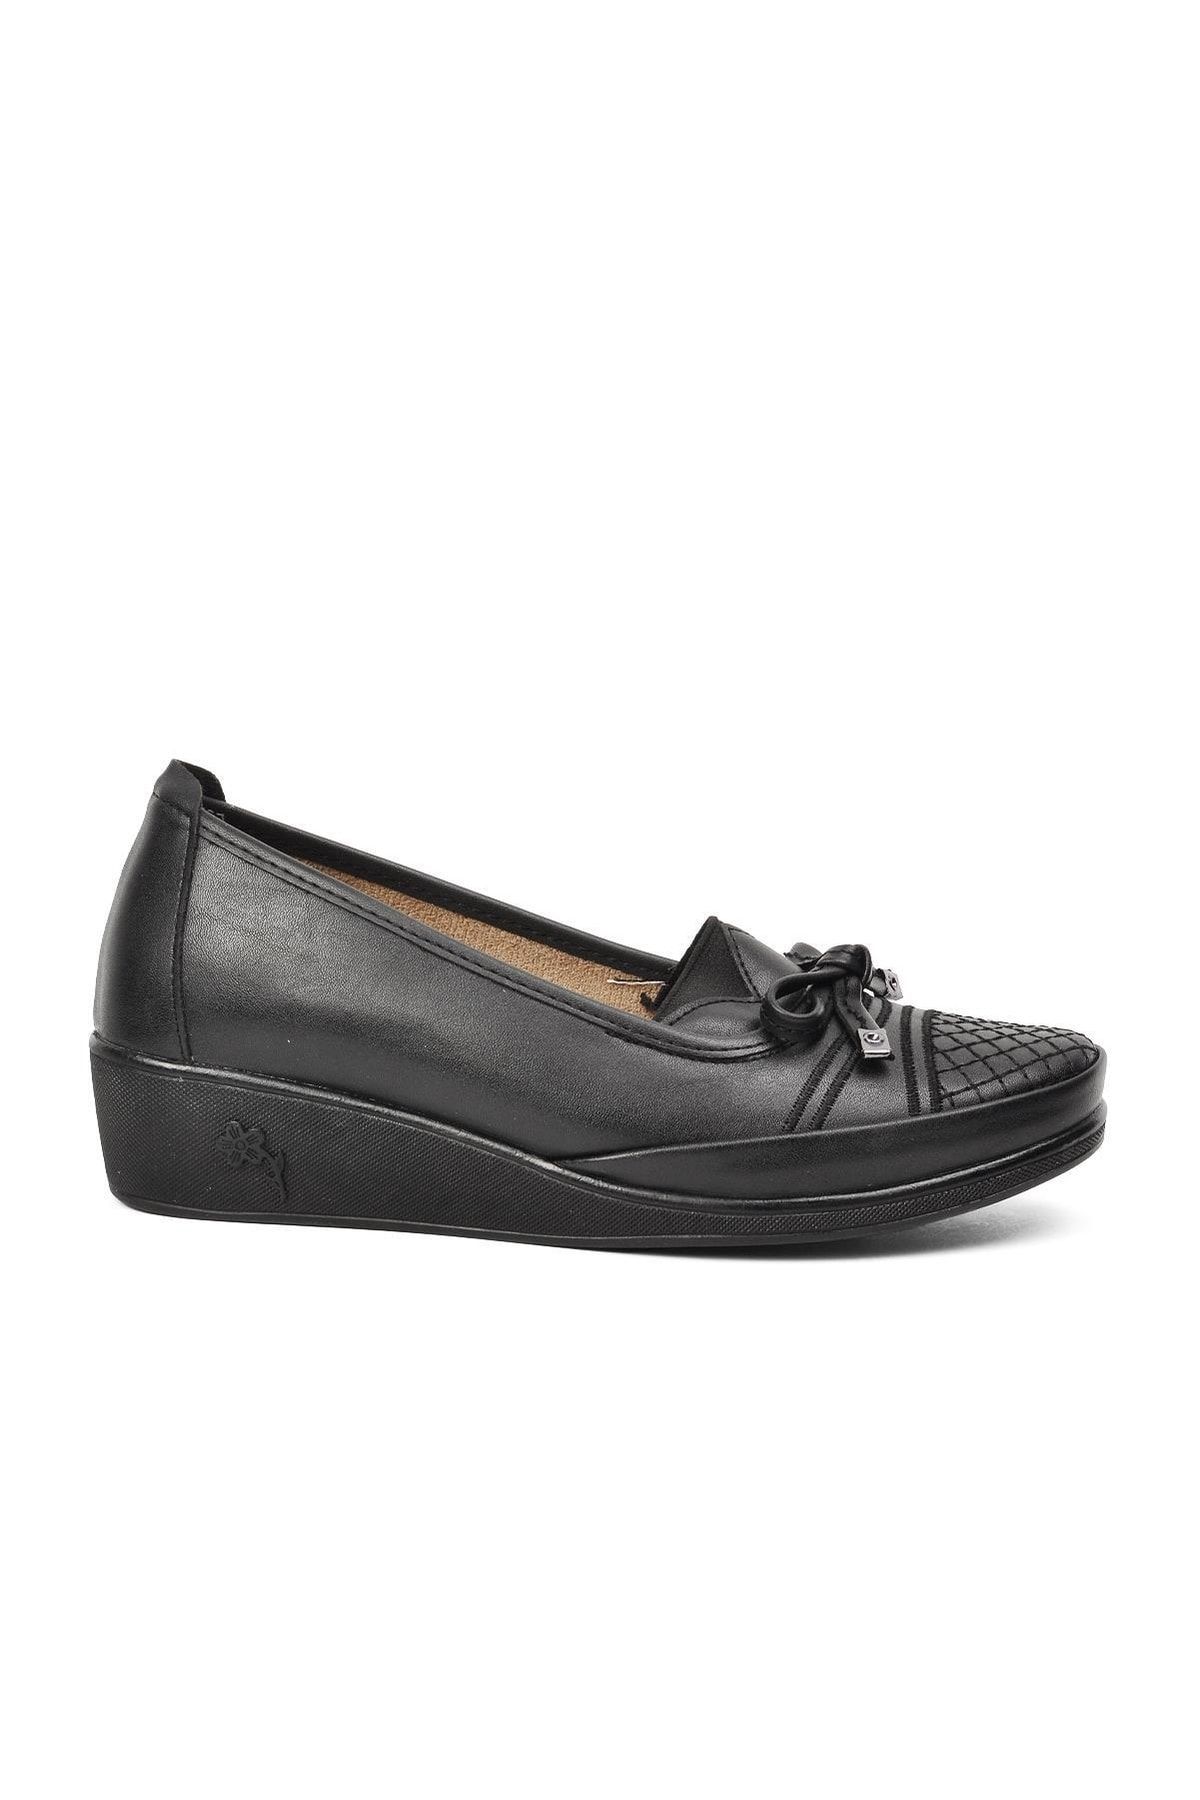 ESLEM M 137 Siyah Comfort Içi Hakiki Deri Kadın Günlük Ayakkabı